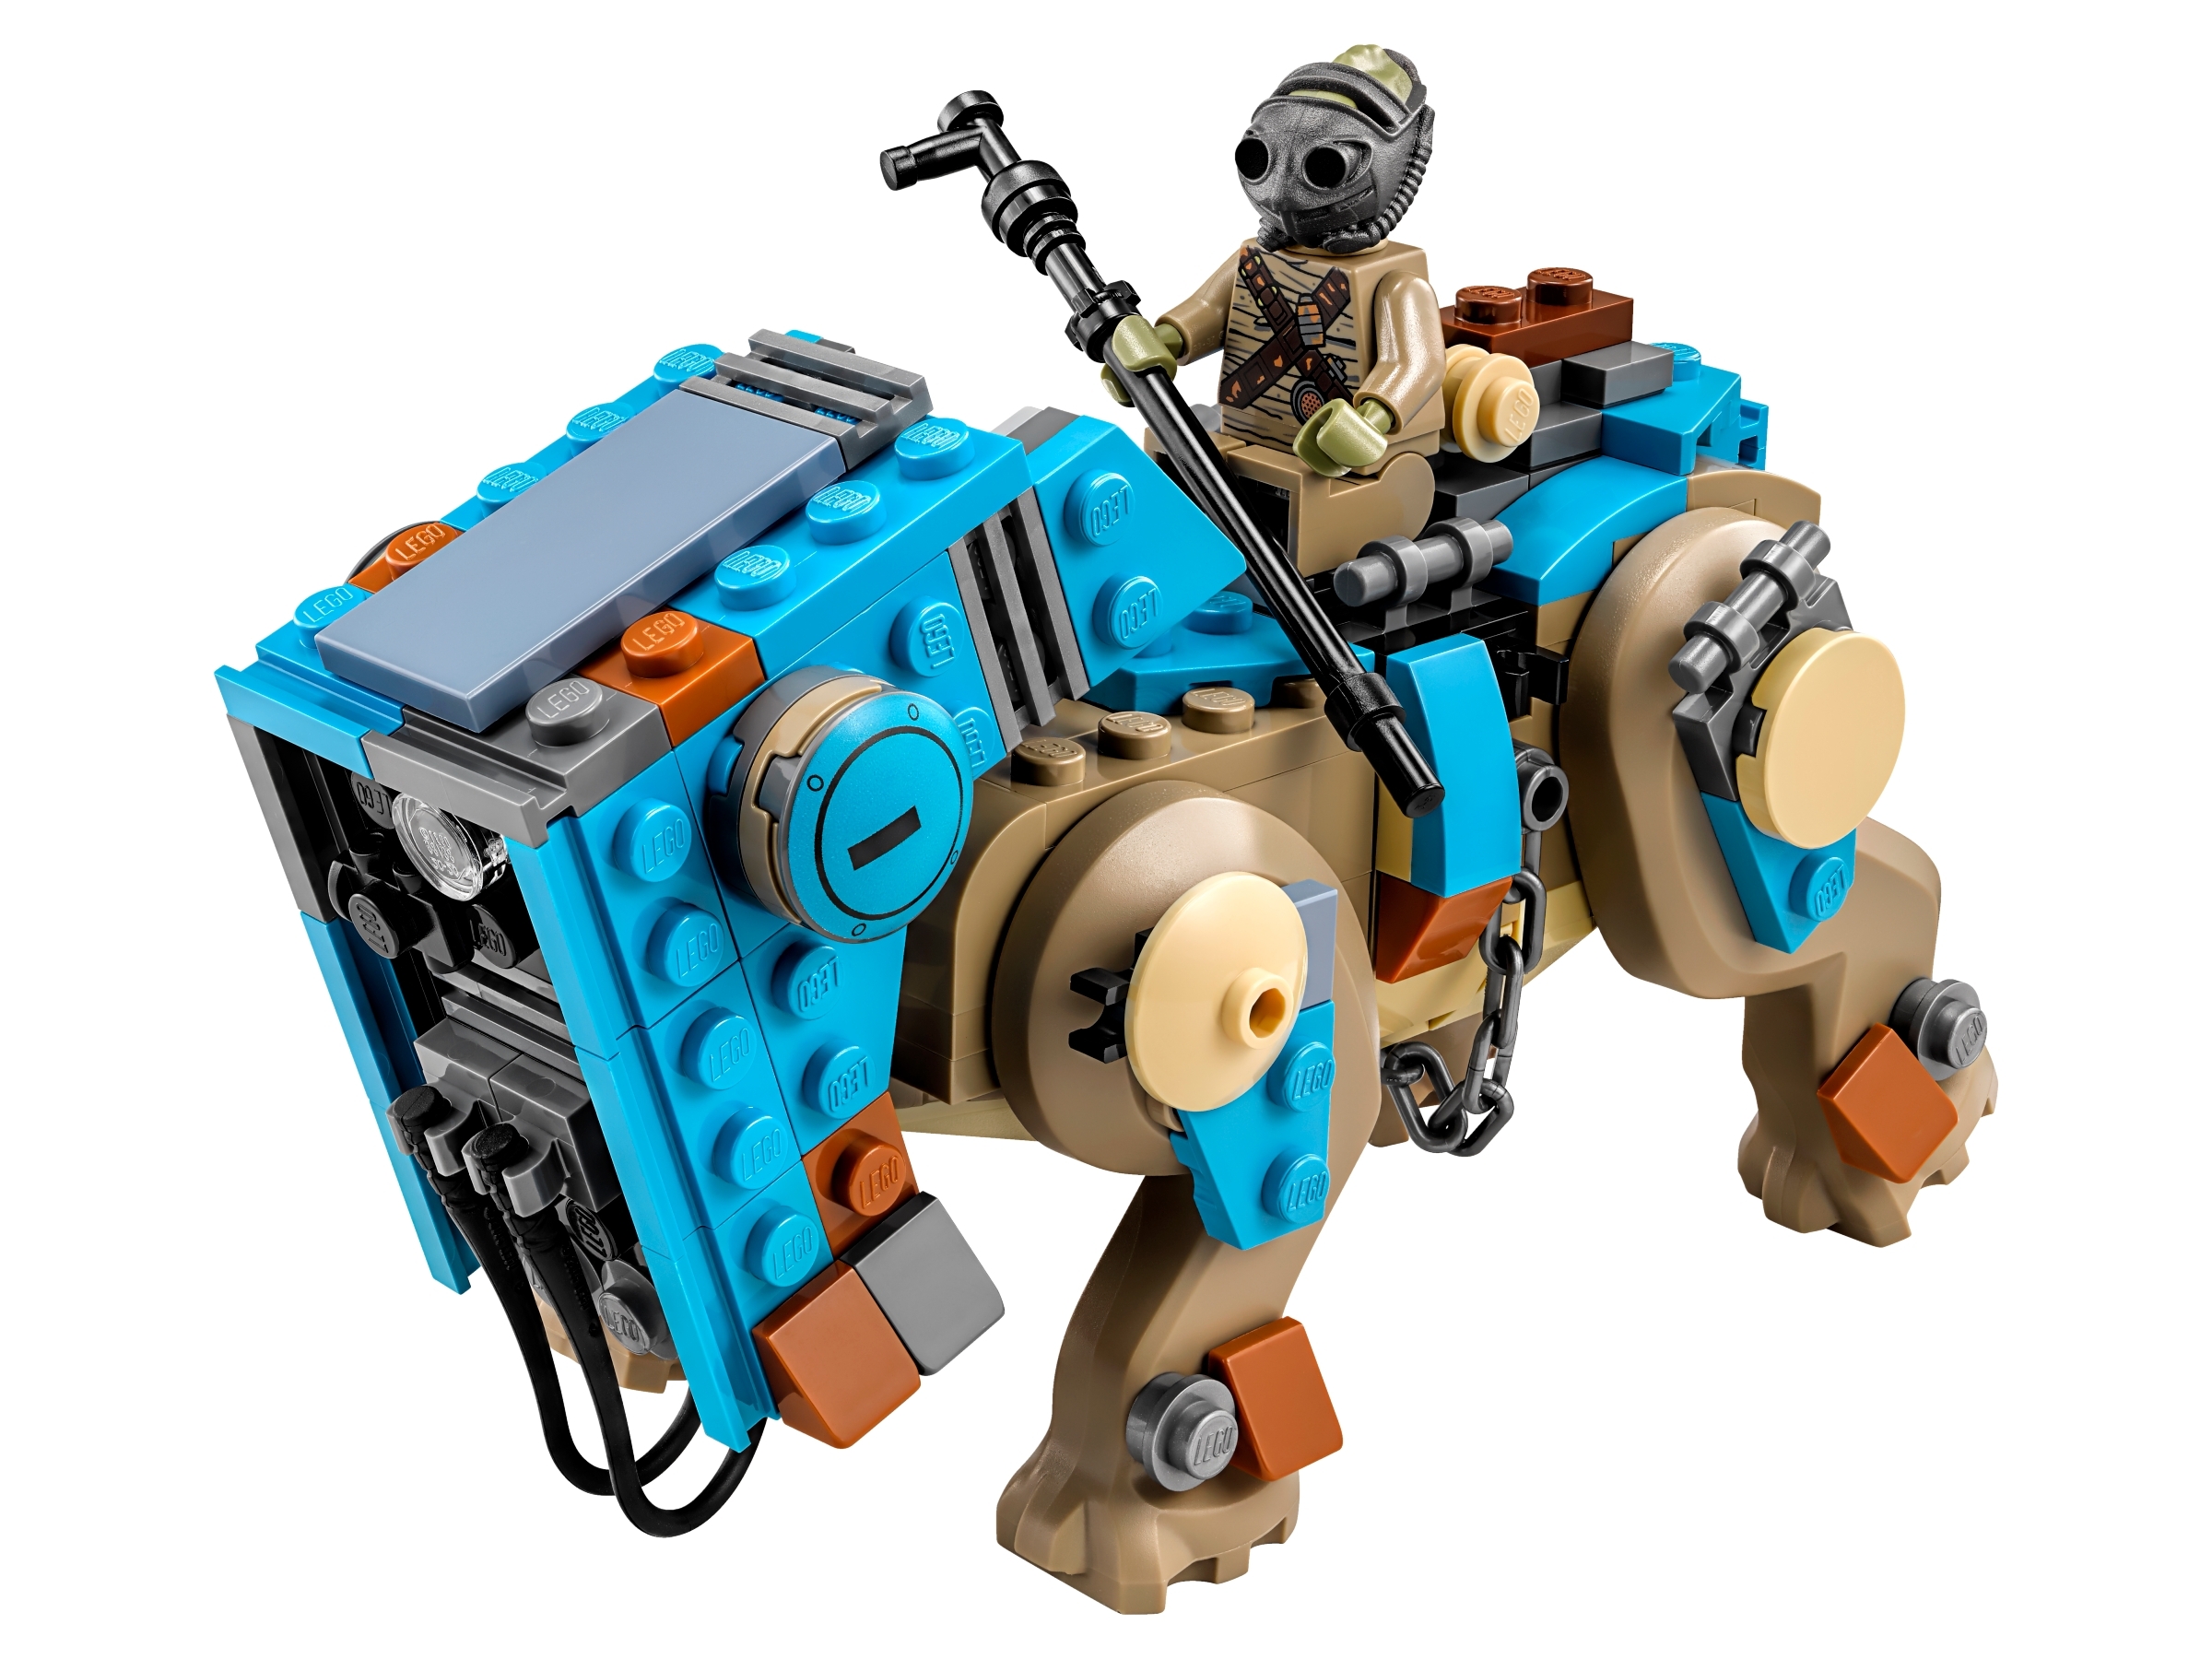 LEGO Star Wars teedo minifigura 75148 NUOVO AUTENTICO EPISODIO 7 la figura 